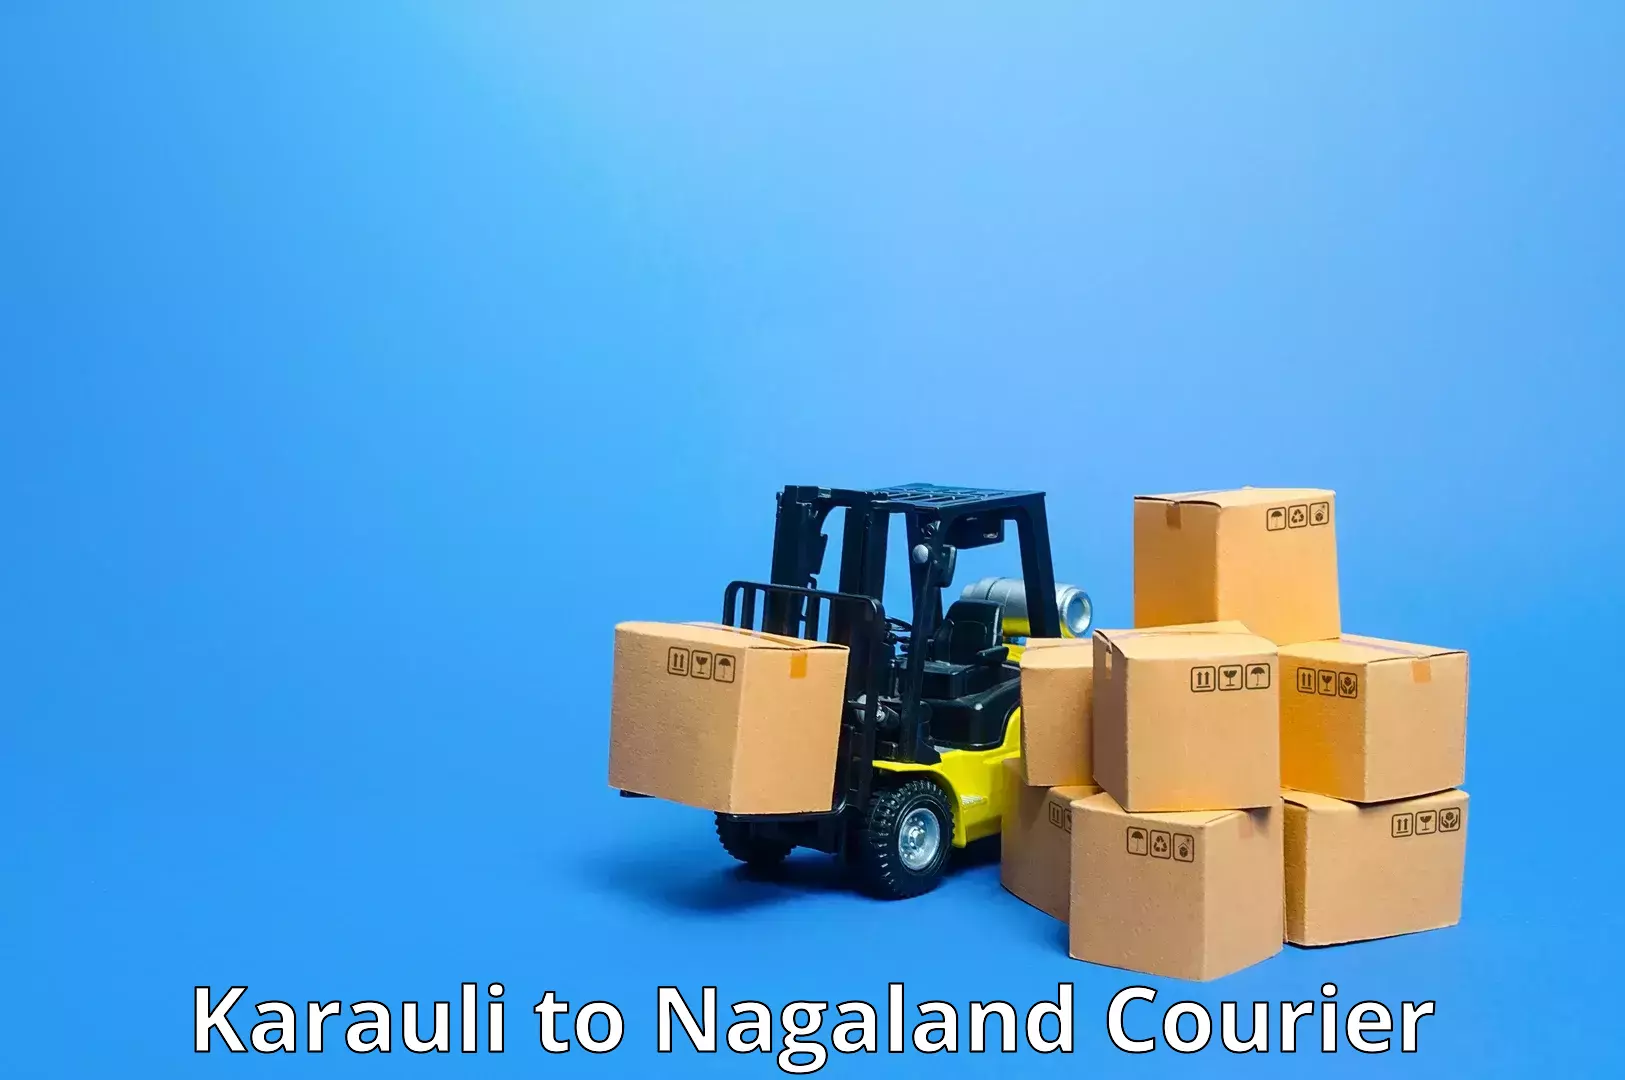 Tech-enabled shipping Karauli to Mon